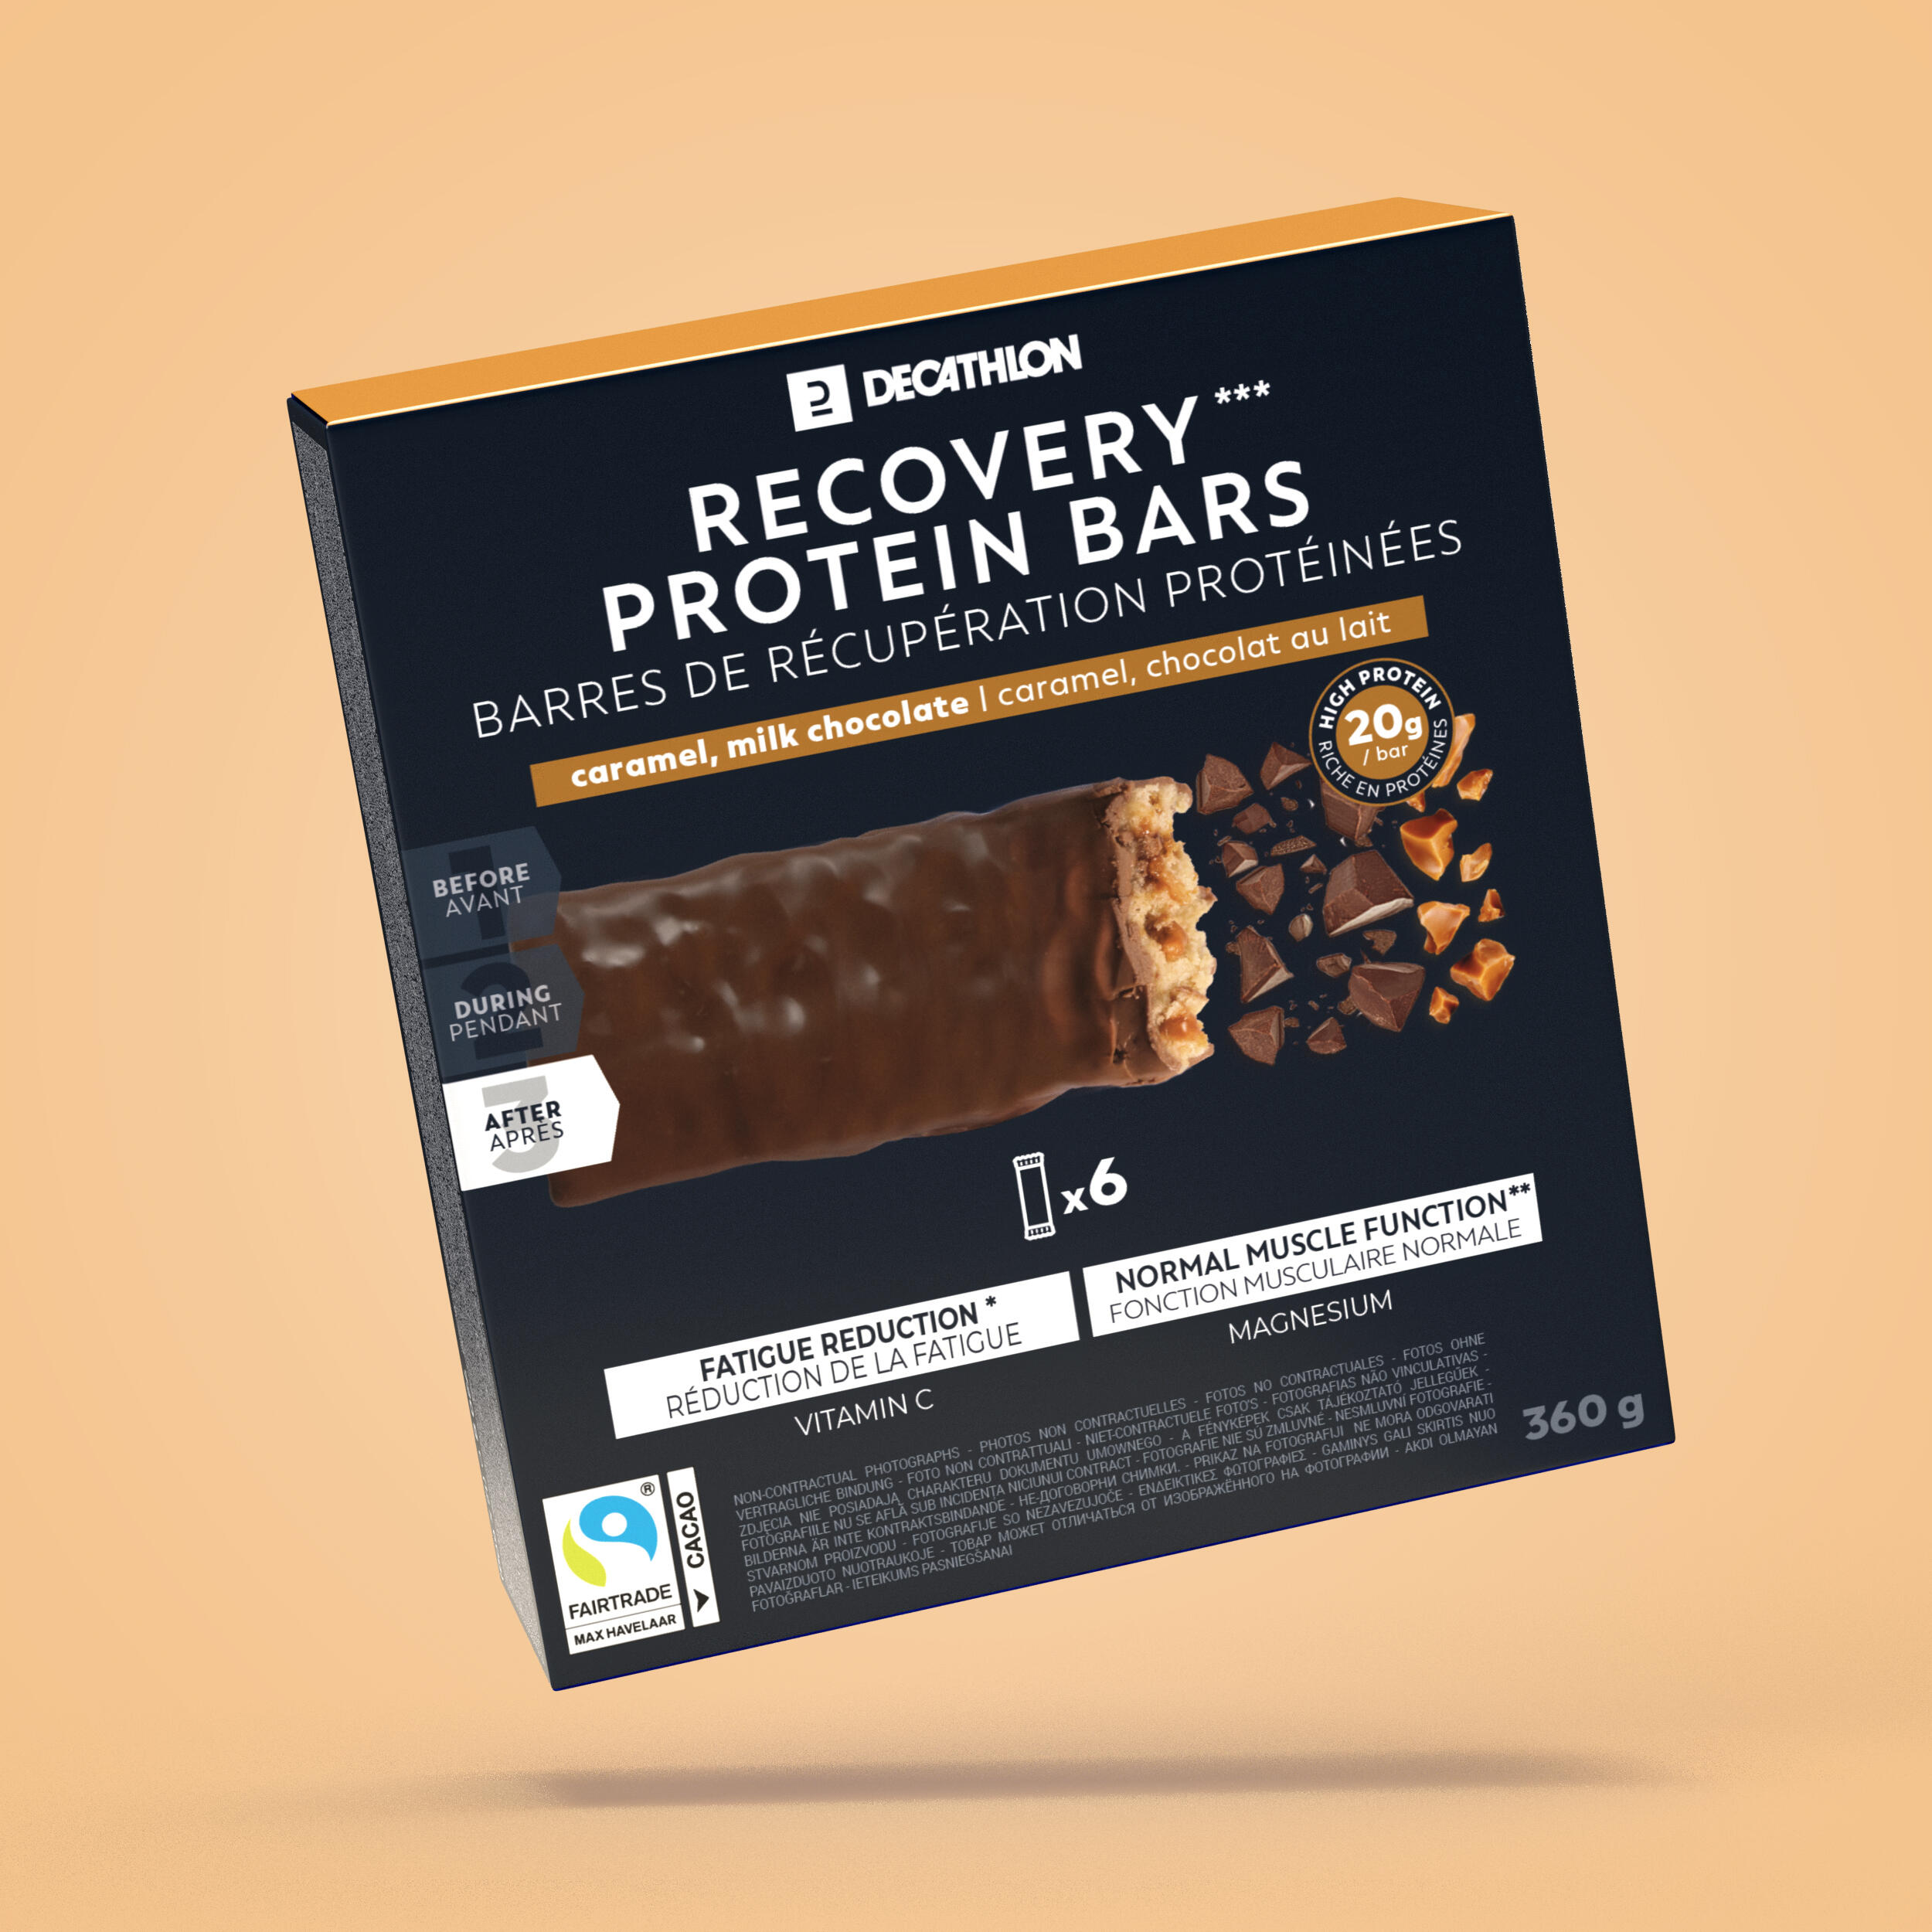 Baton proteine pentru recuperare aromă Ciocolată și Caramel *6 alimentare